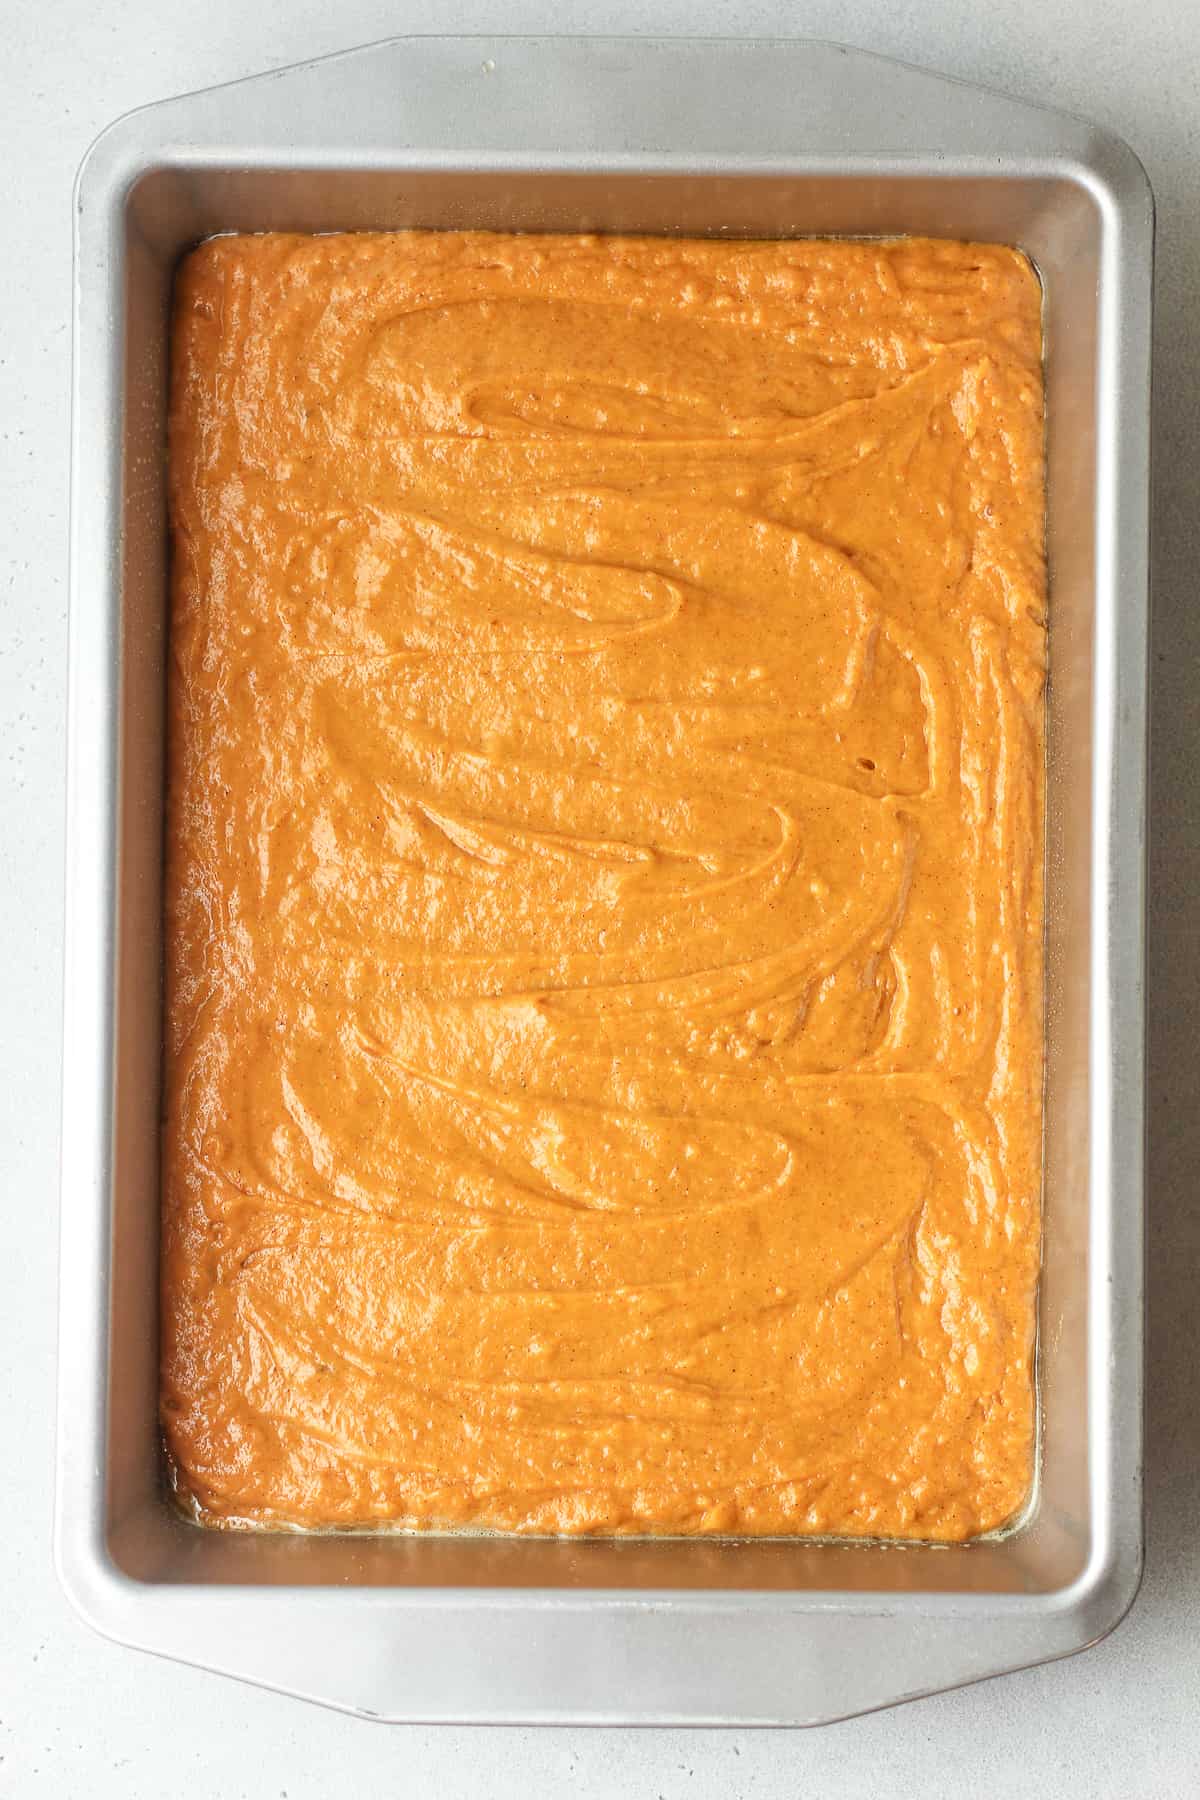 The pumpkin cake batter in a rectangular pan.